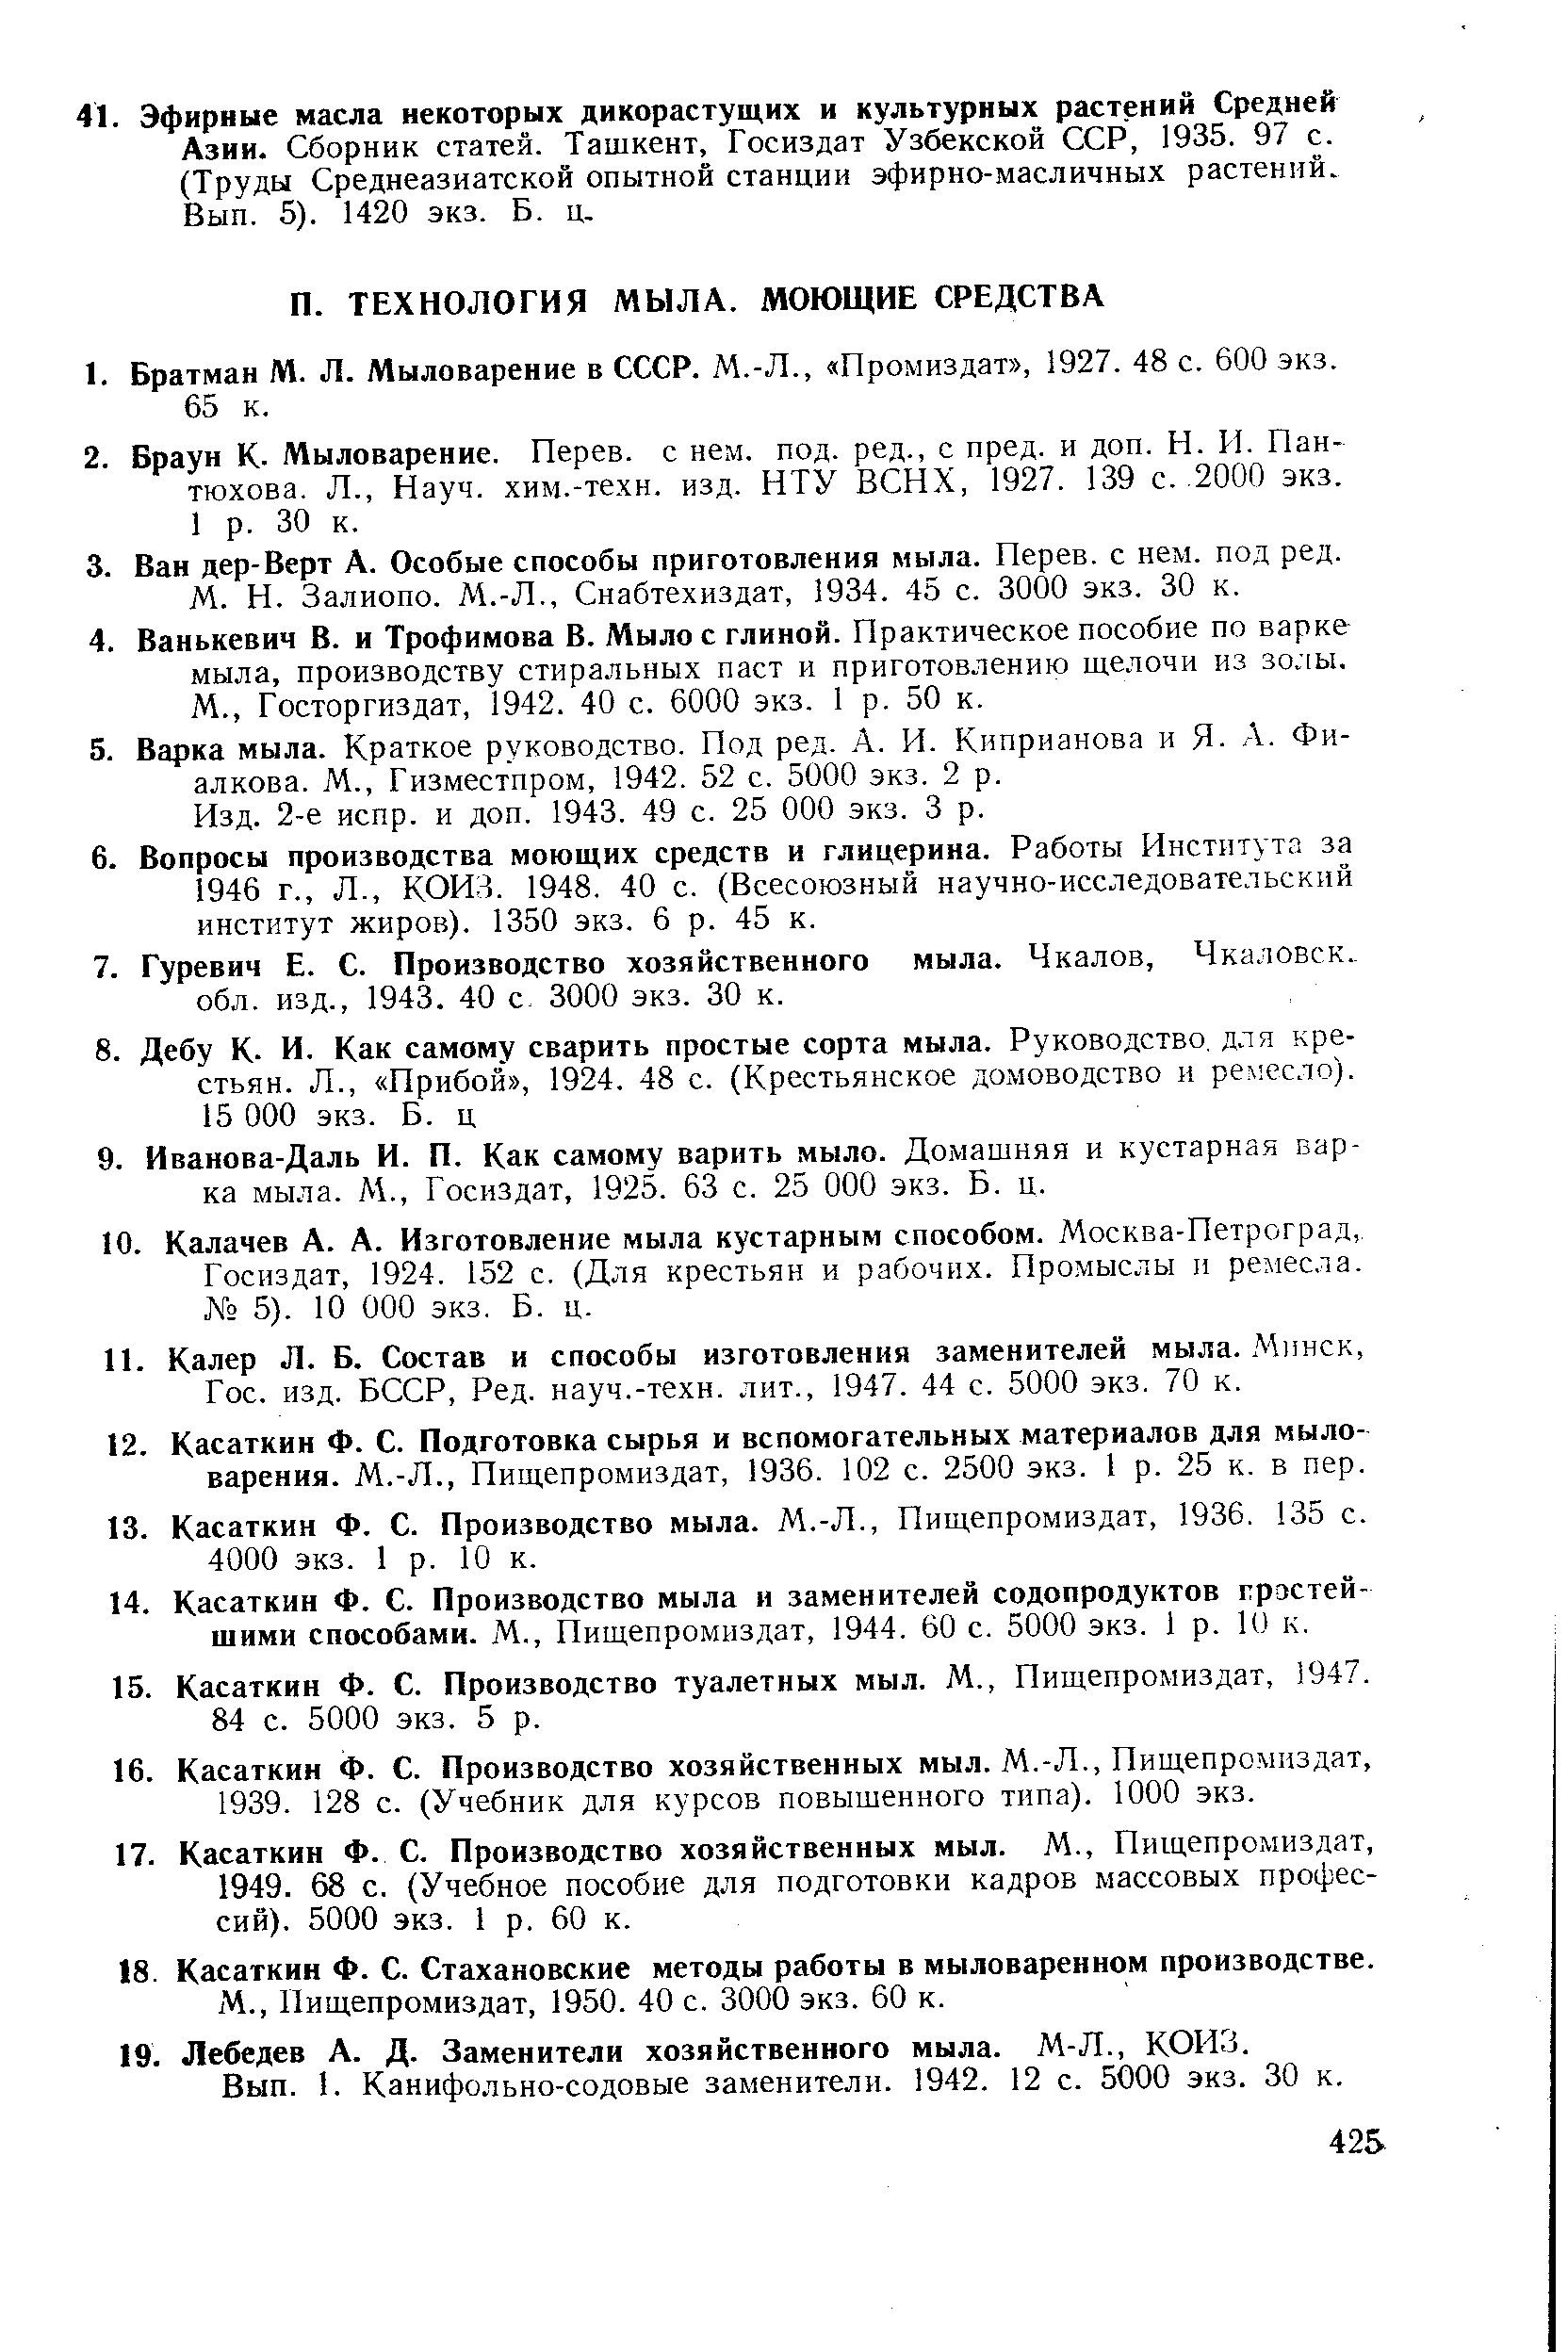 2-е испр. и доп. 1943. 49 с. 25 ООО экз. 3 р.